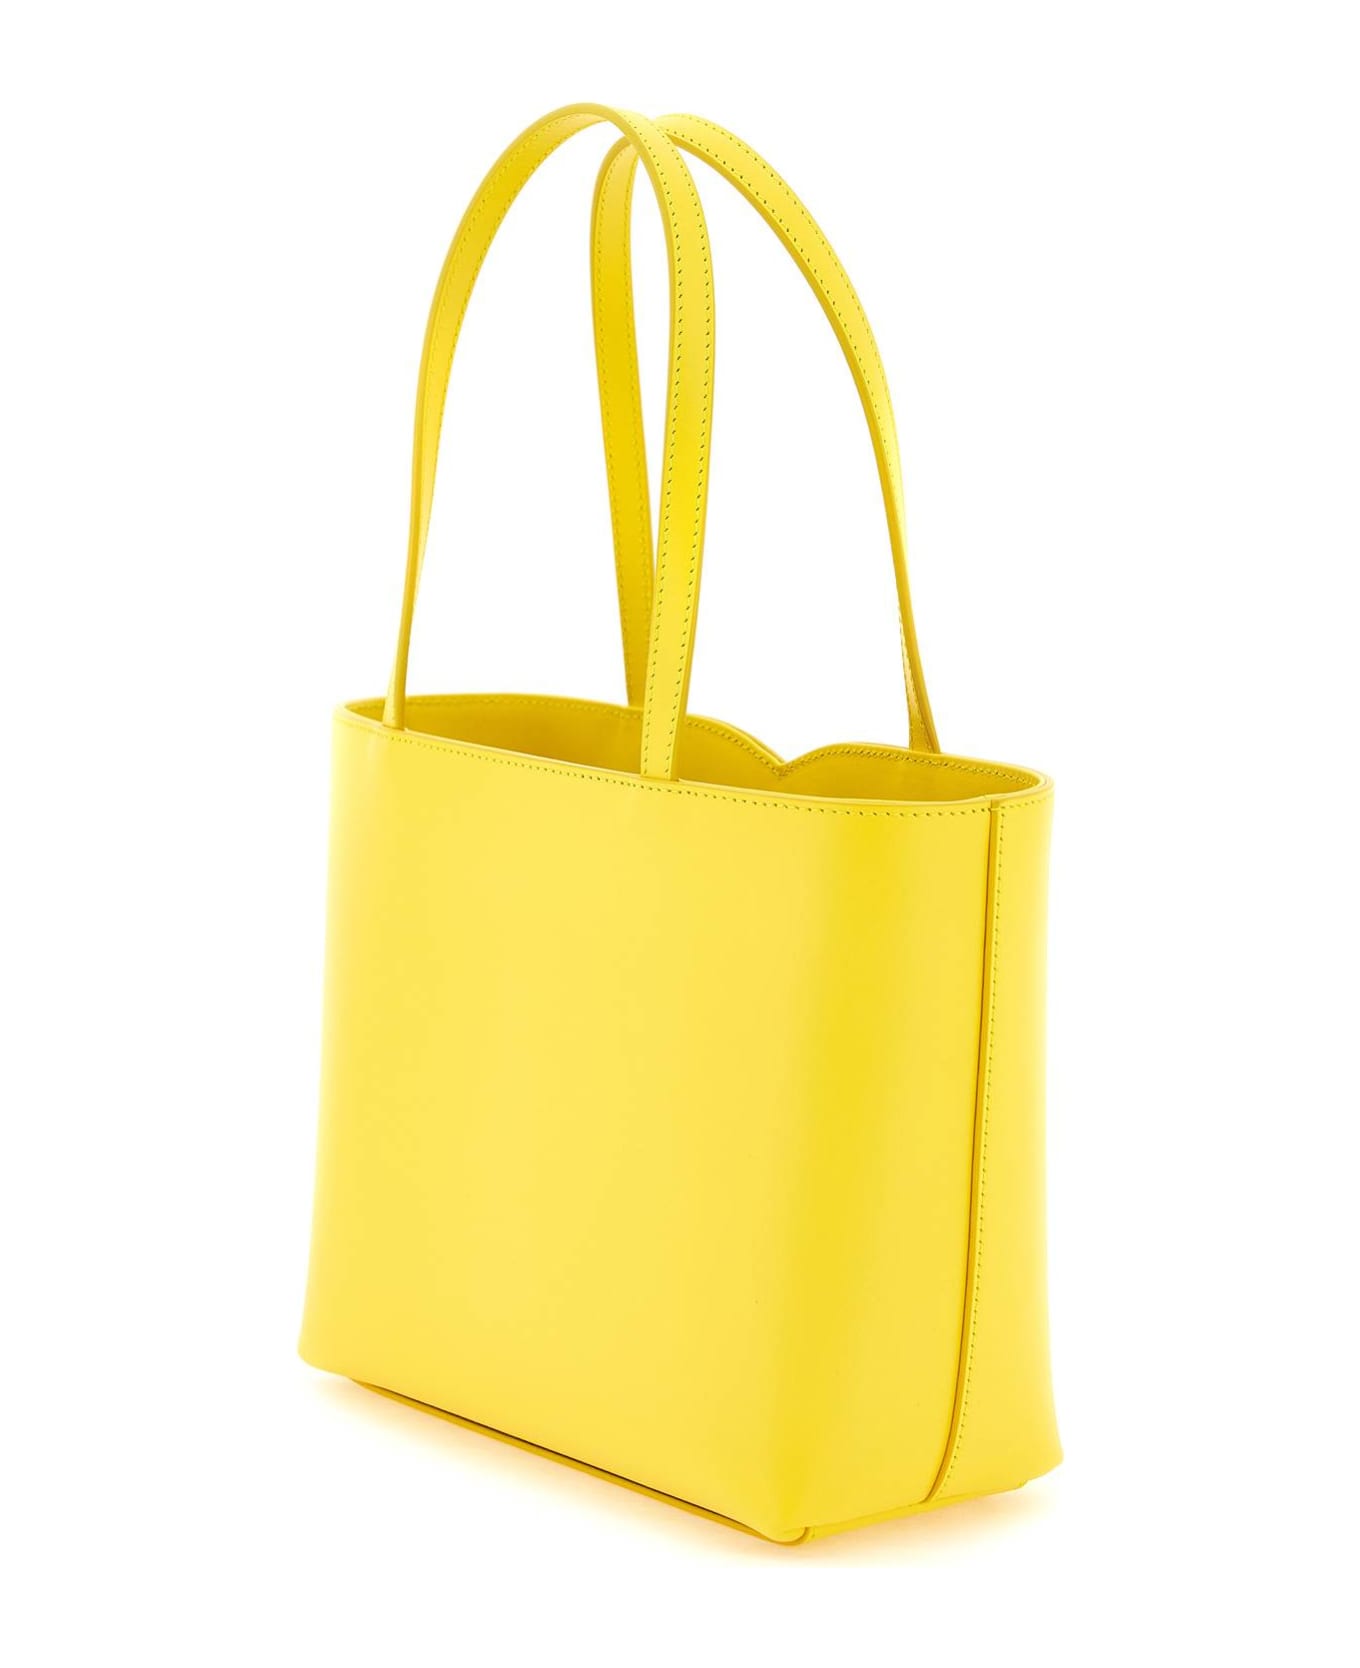 Dolce & Gabbana Logo Shopping Bag - GIALLO ORO (Yellow)